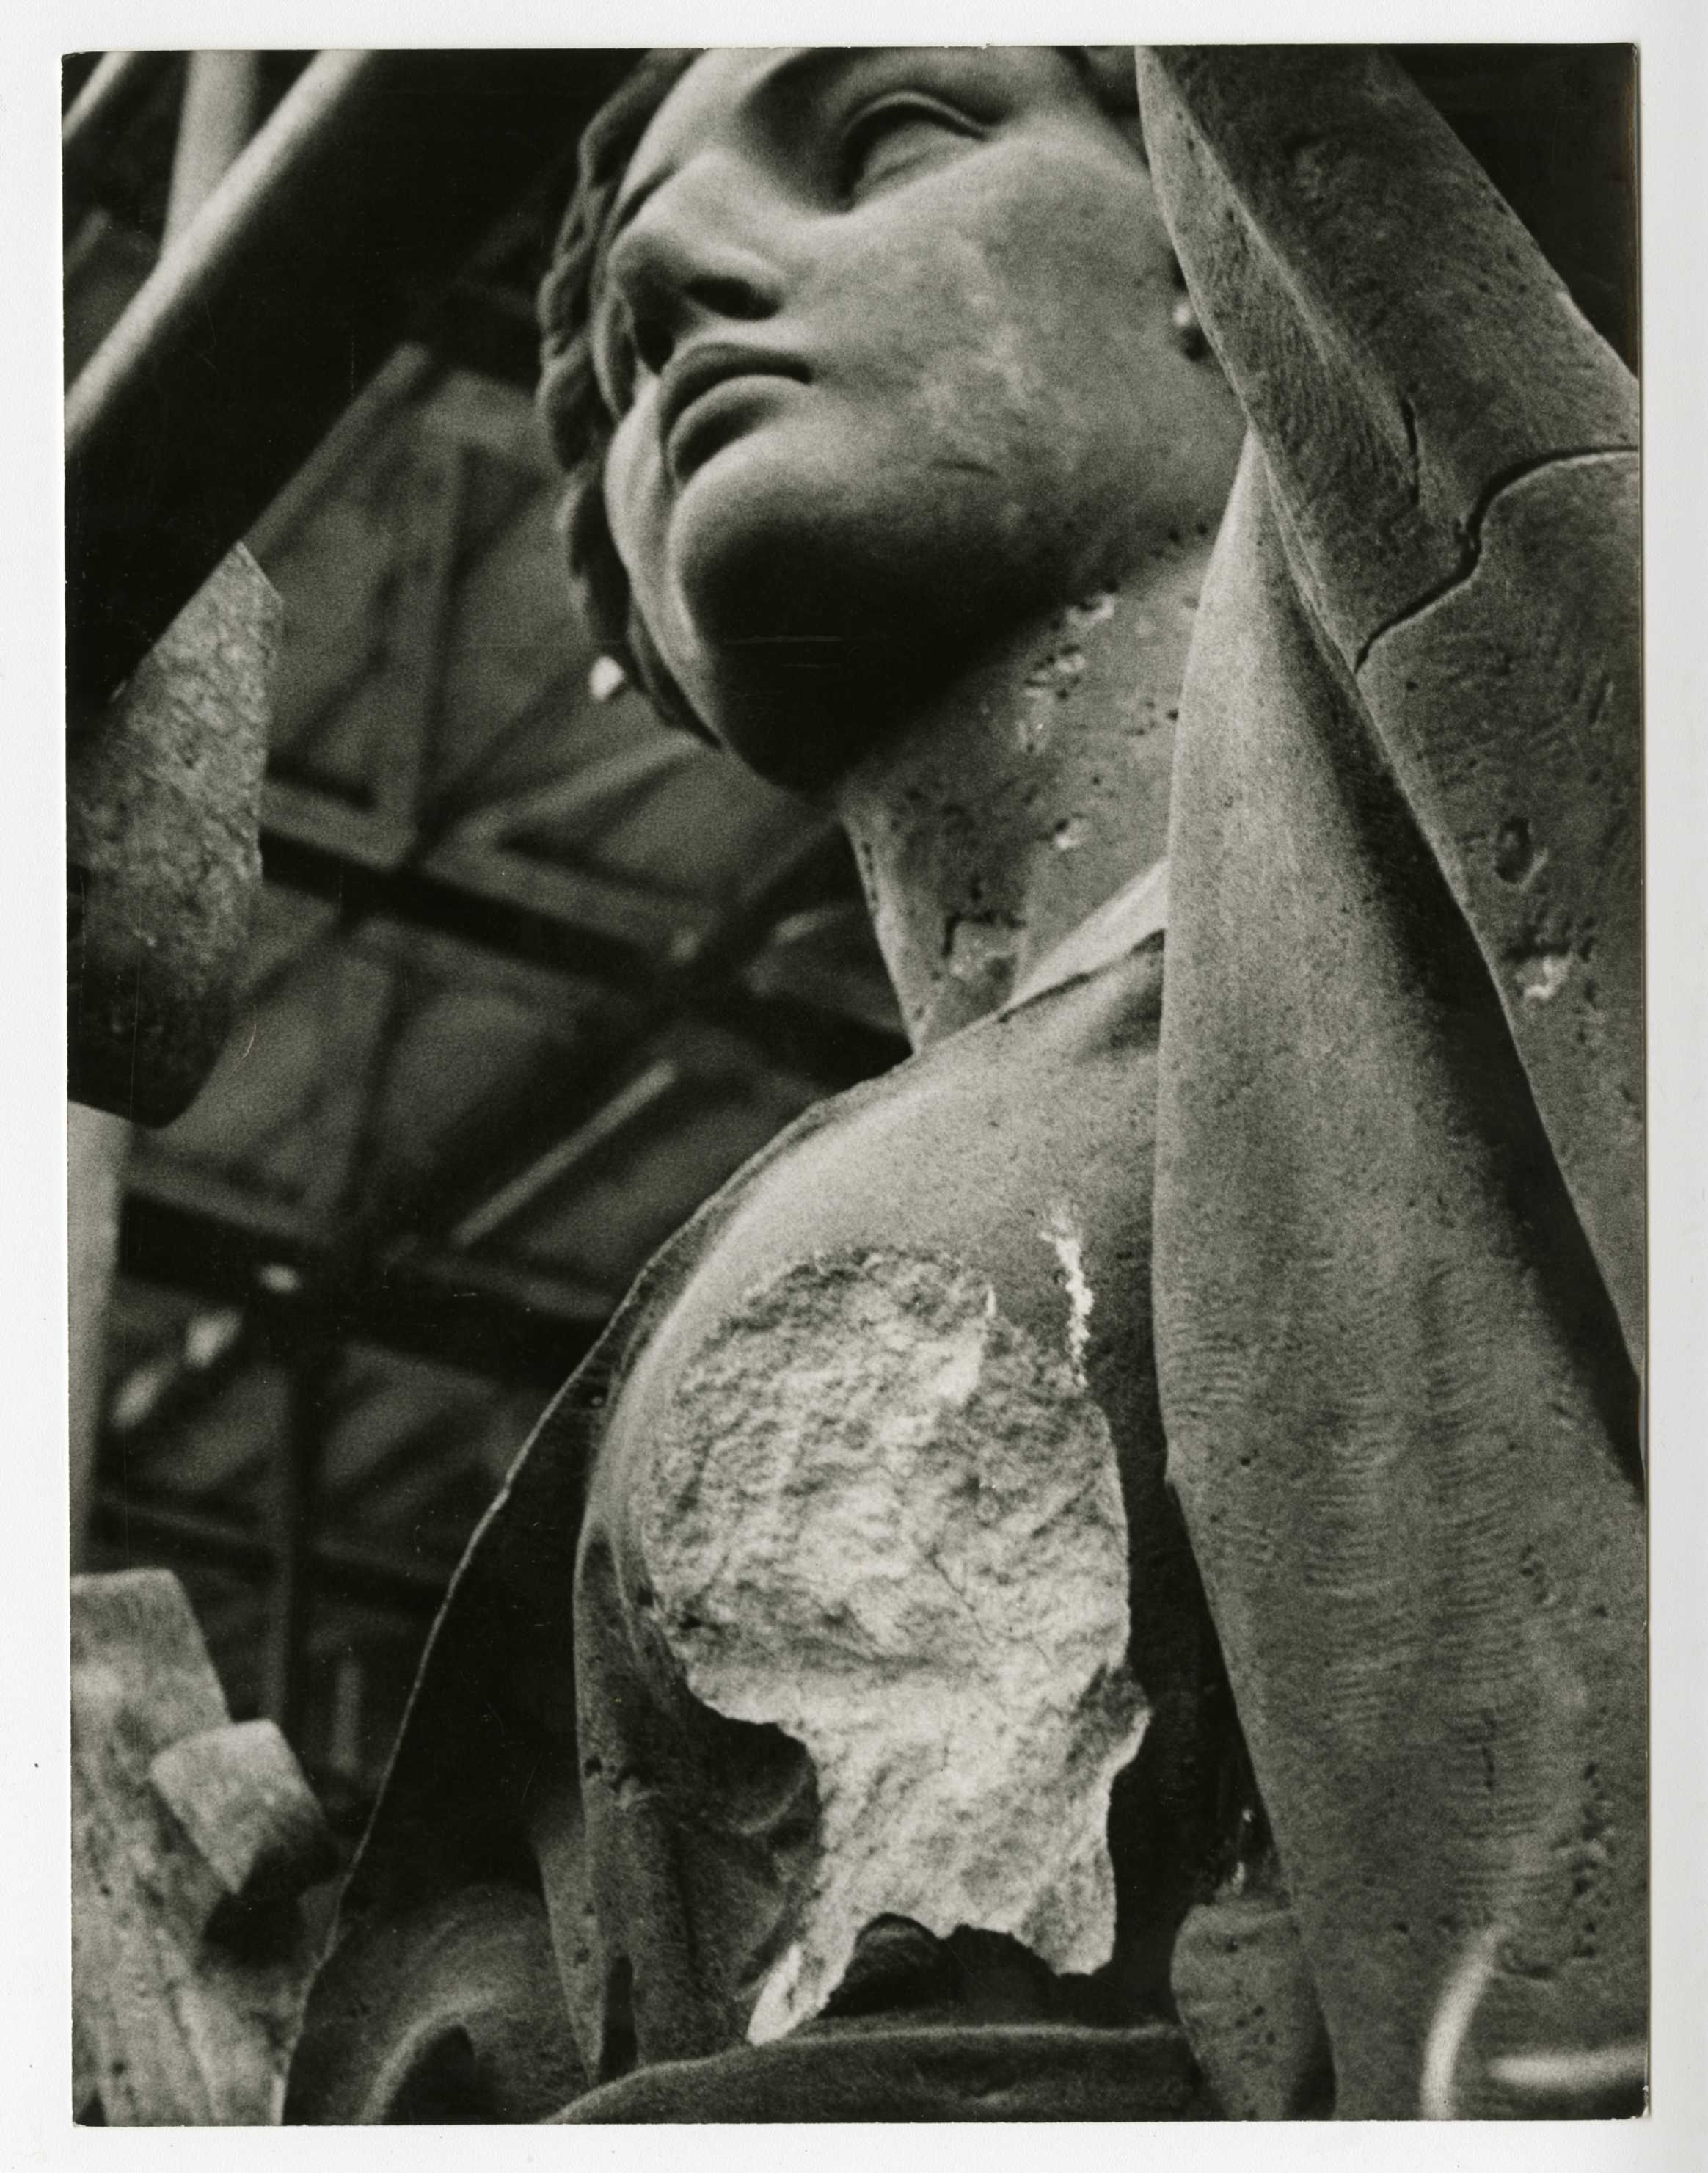 Fotografie. Socha poškozená střelbou v roce 1968. Zdroj: Národní muzeum